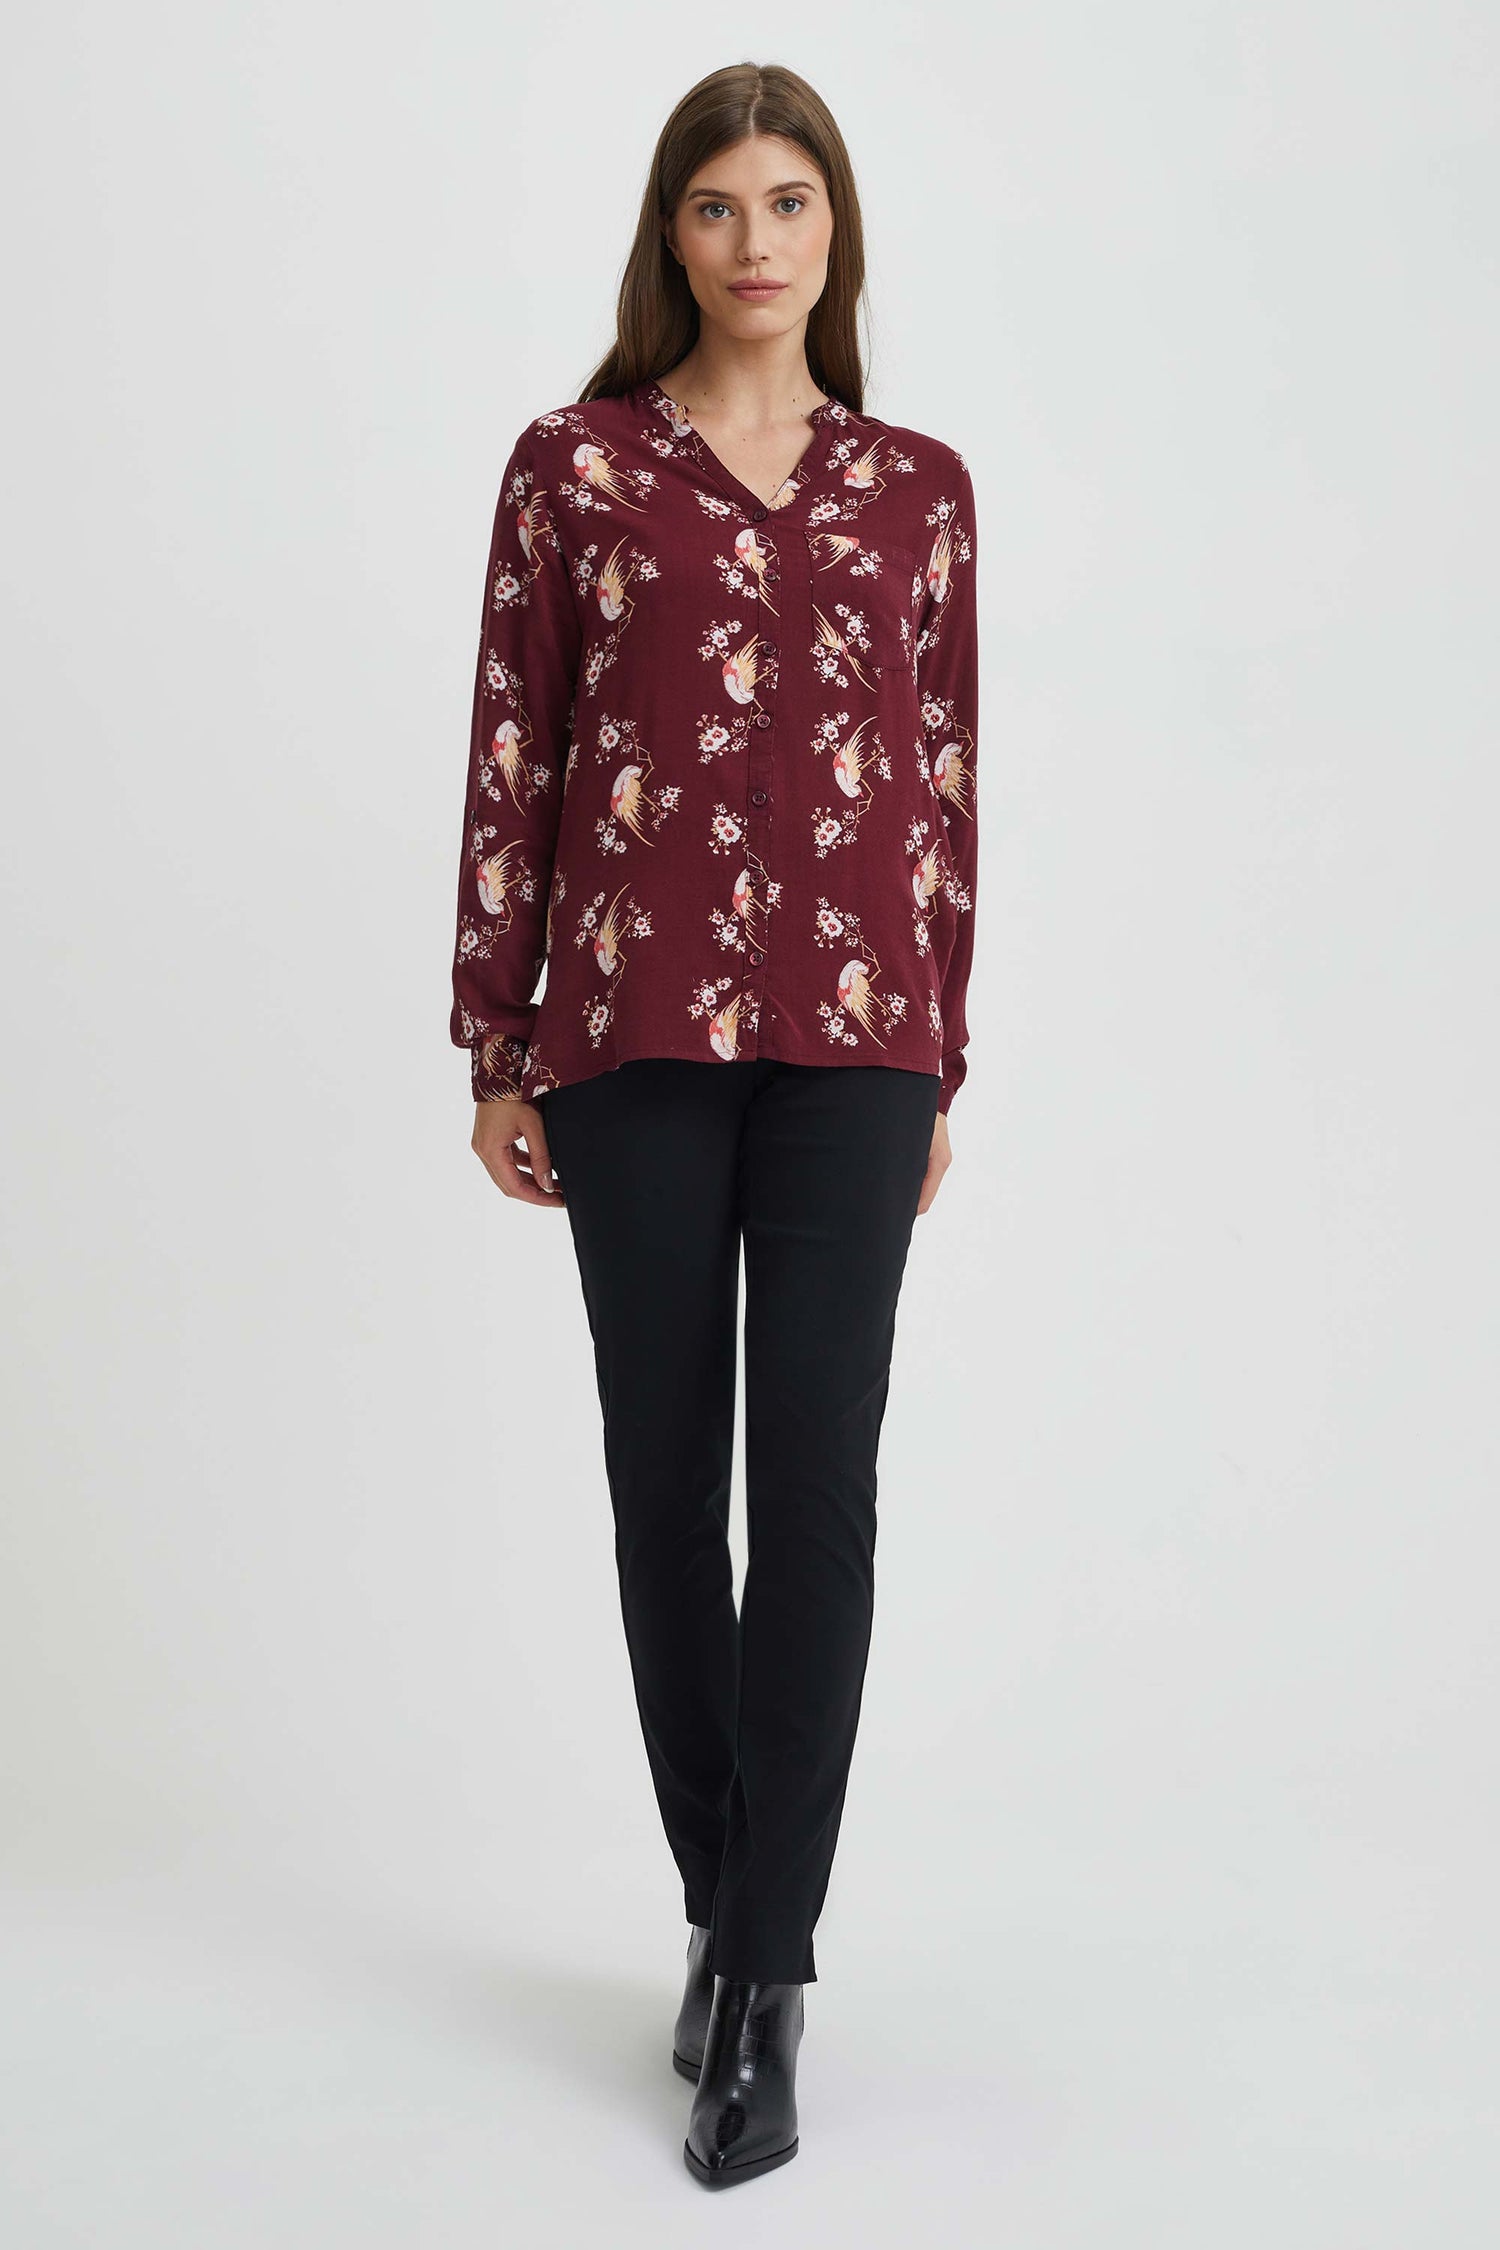 Asymmetrical floral print blouse